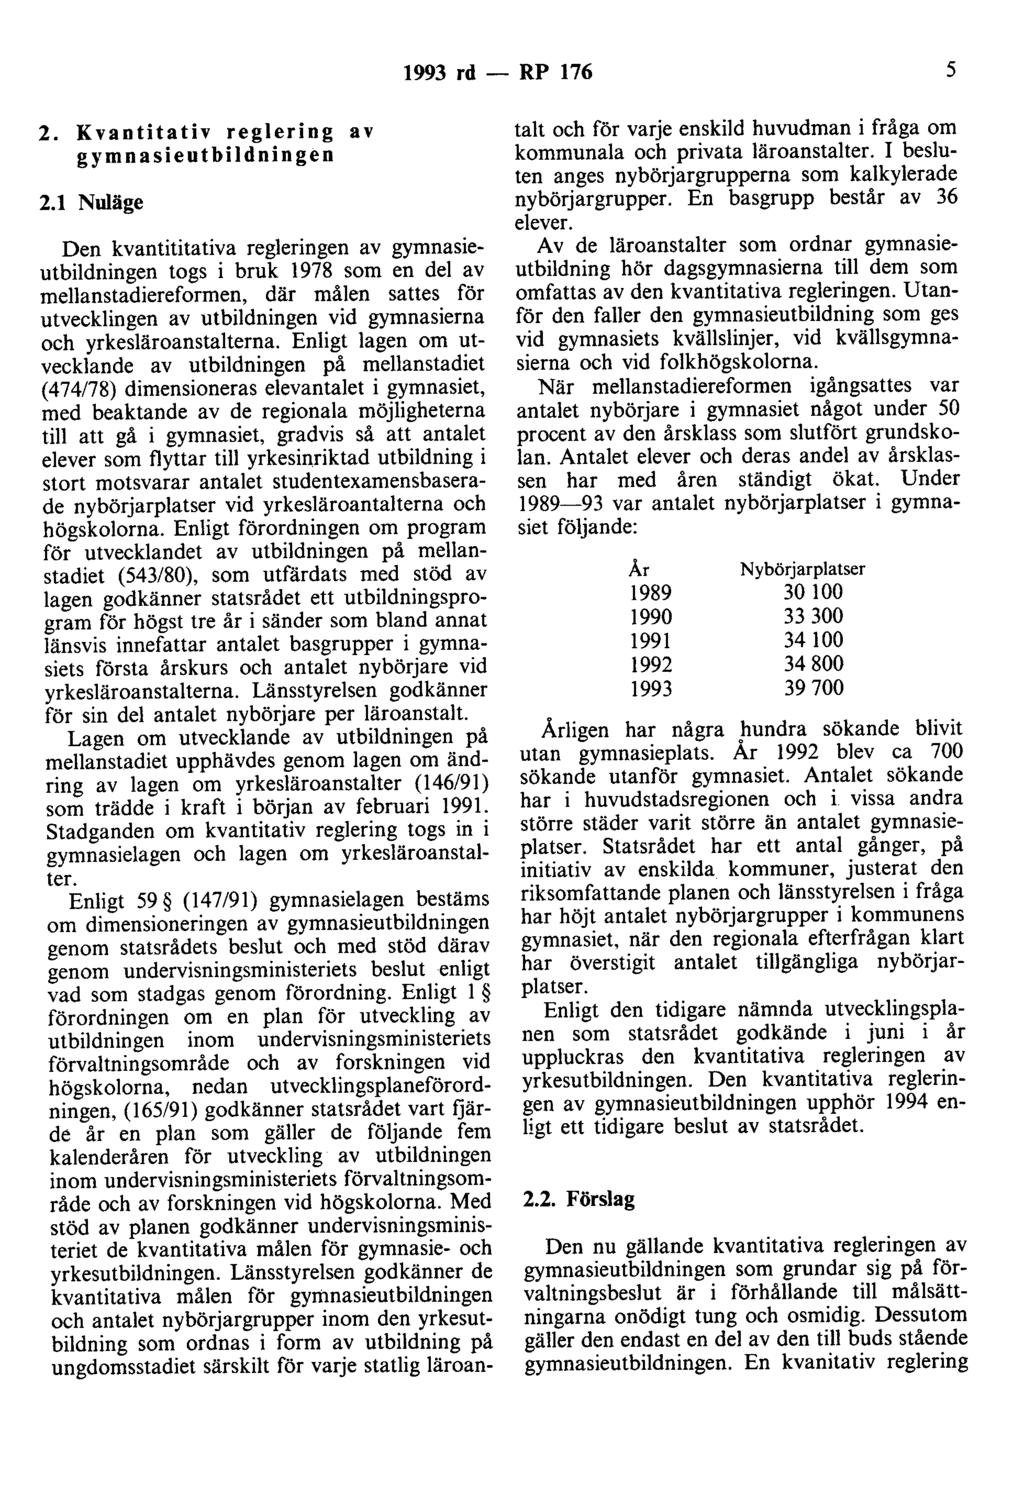 1993 rd - RP 176 5 2. Kvantitativ reglering av gymnasieutbildningen 2.